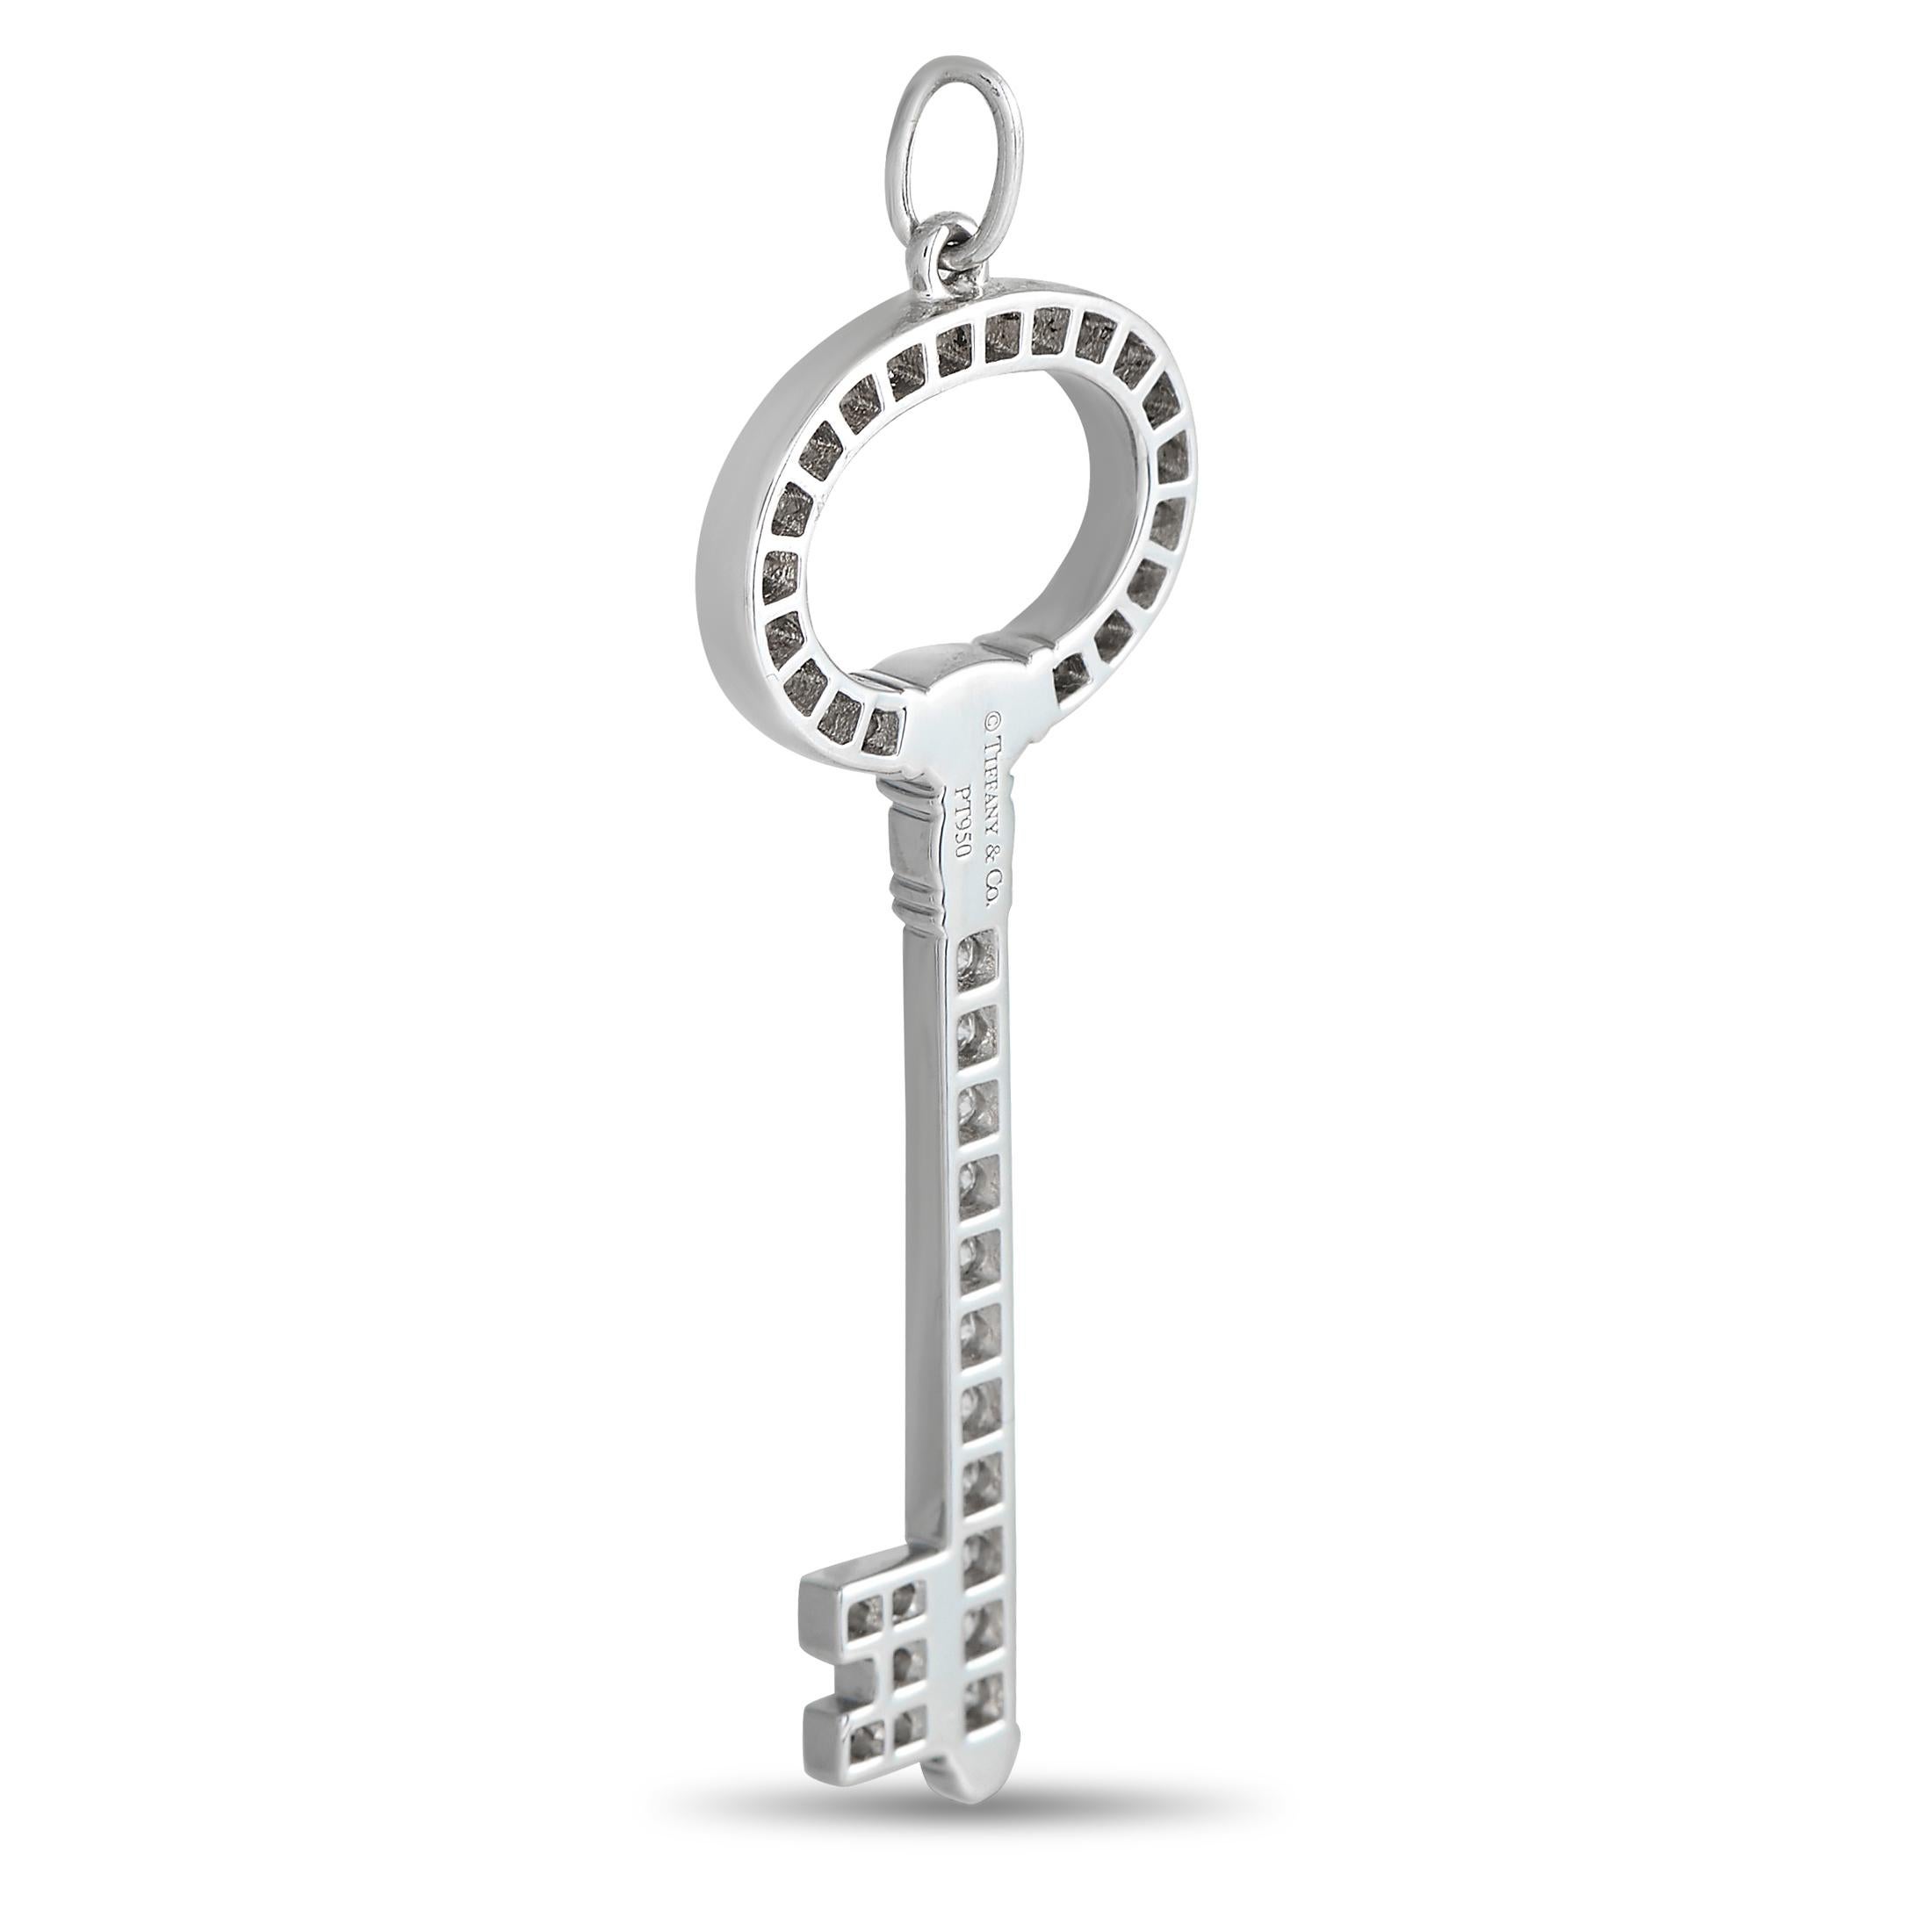 Une clé Tiffany moderne et intemporelle en platine durable. Ce bijou a été présenté pour la première fois en 2009 pour représenter la vision de la marque sur les possibilités infinies. Ce pendentif en platine a la forme d'une clé squelette vintage